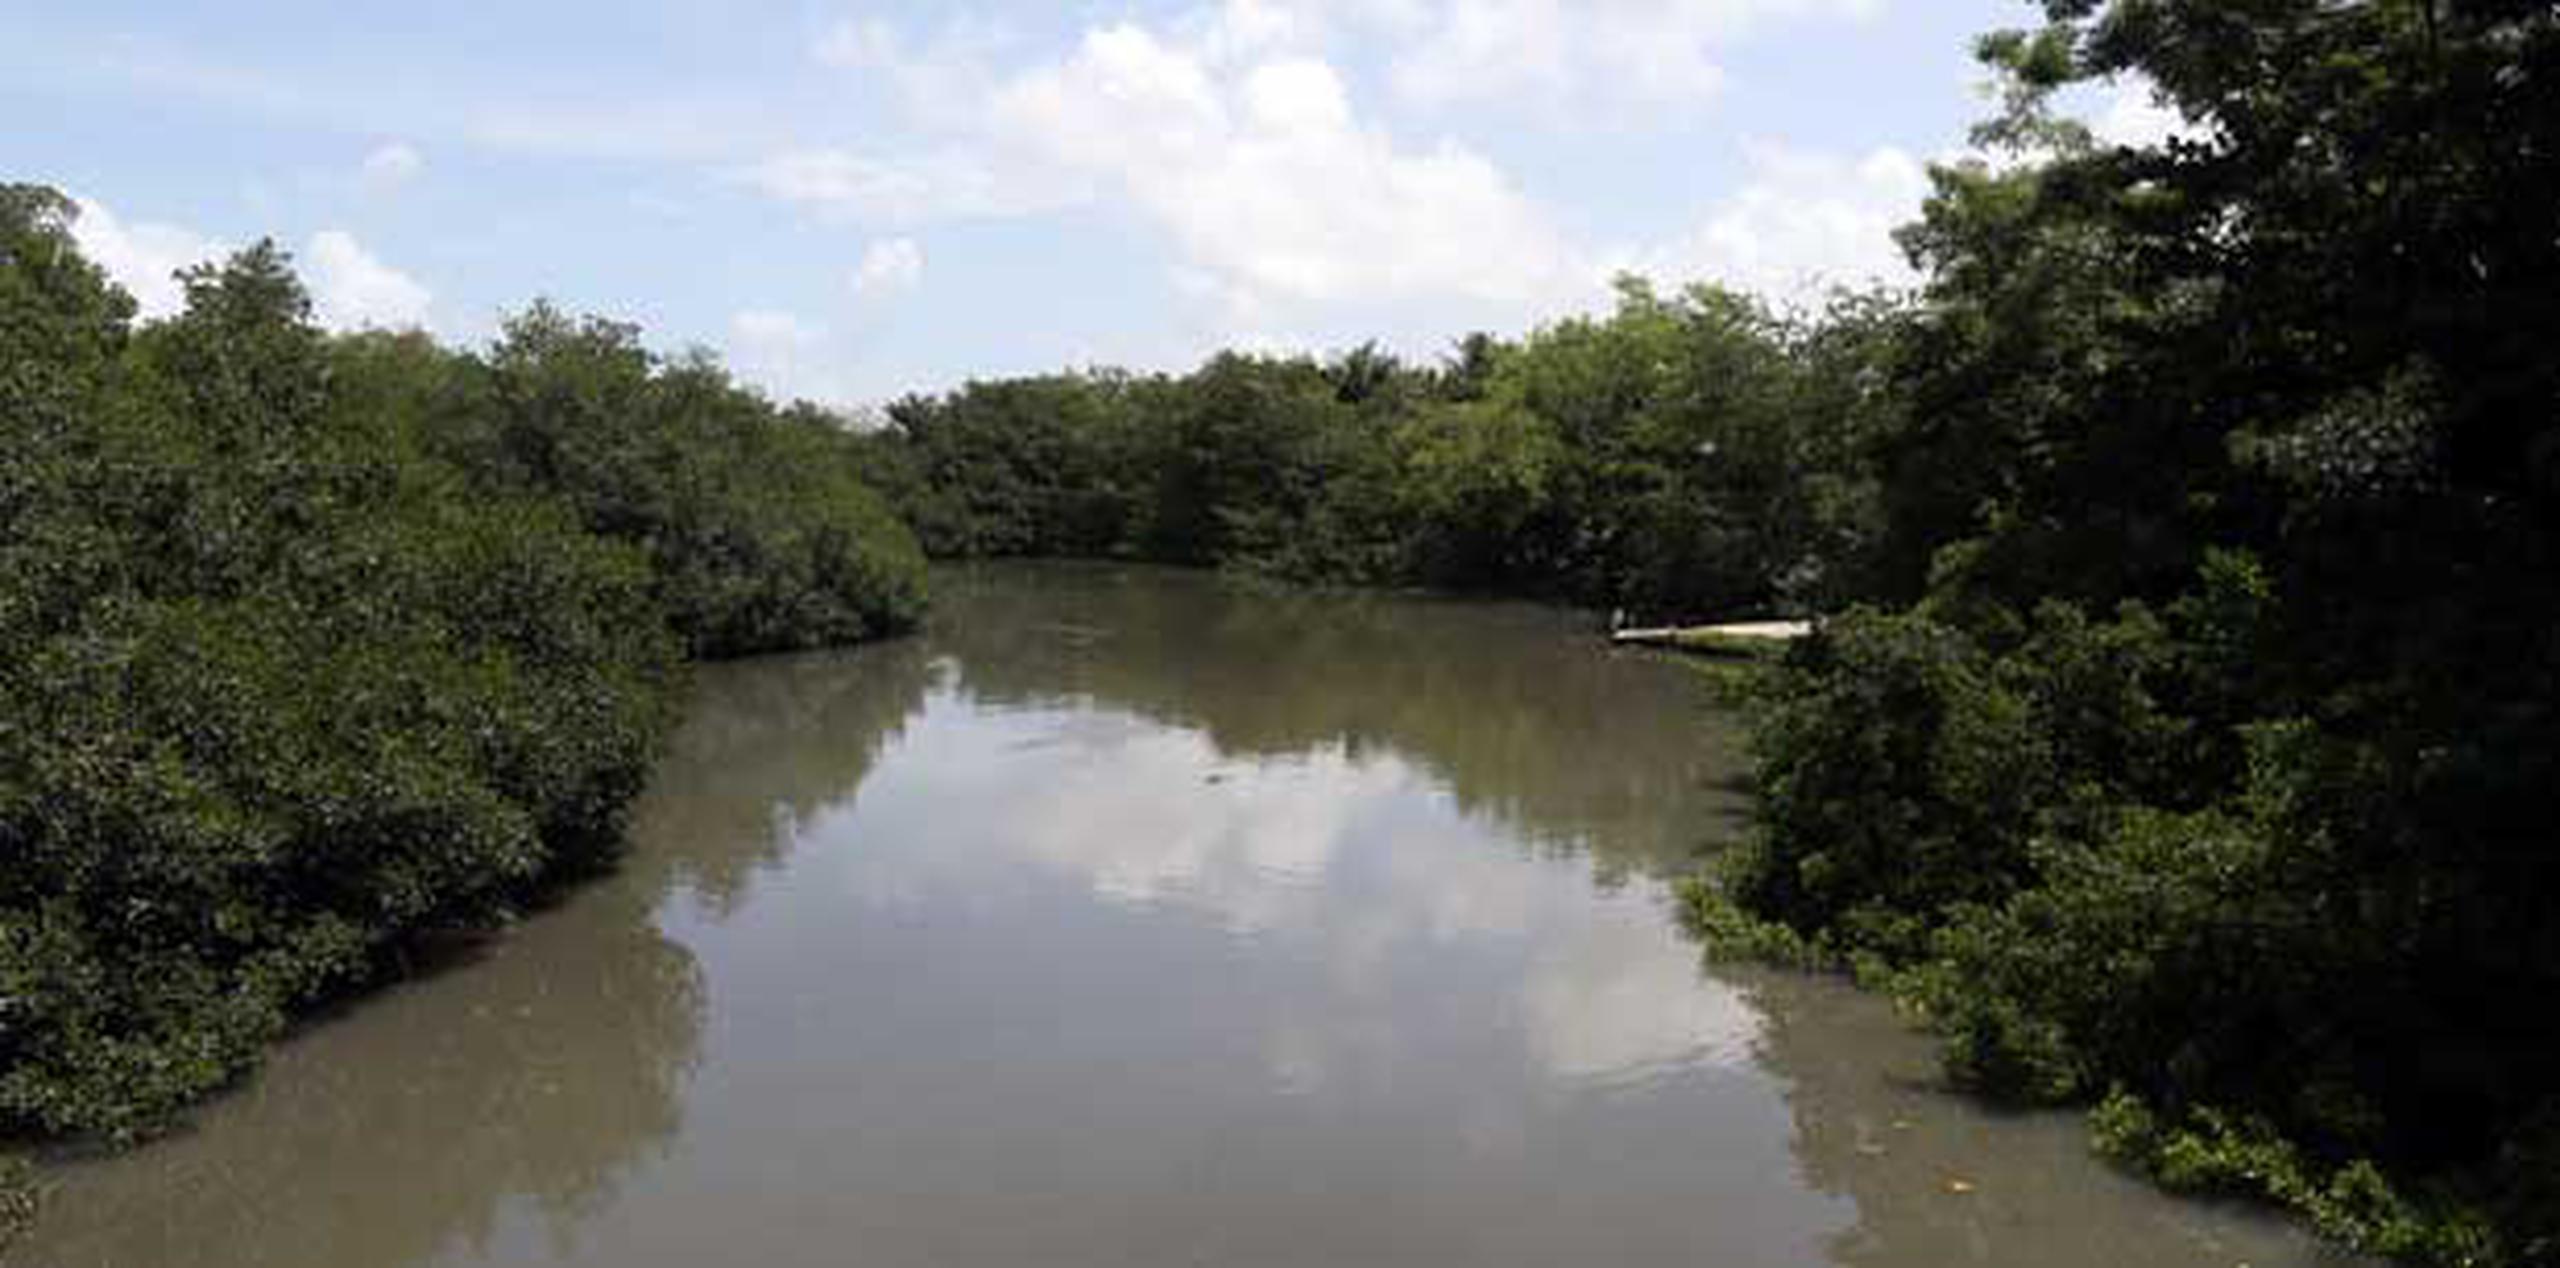 El Caño Martín Peña es un canal natural de una longitud de 3.75 millas que conecta la Bahía de San Juan con las lagunas Los Corozos y San José obstruido por la sedimentación. (Archivo)